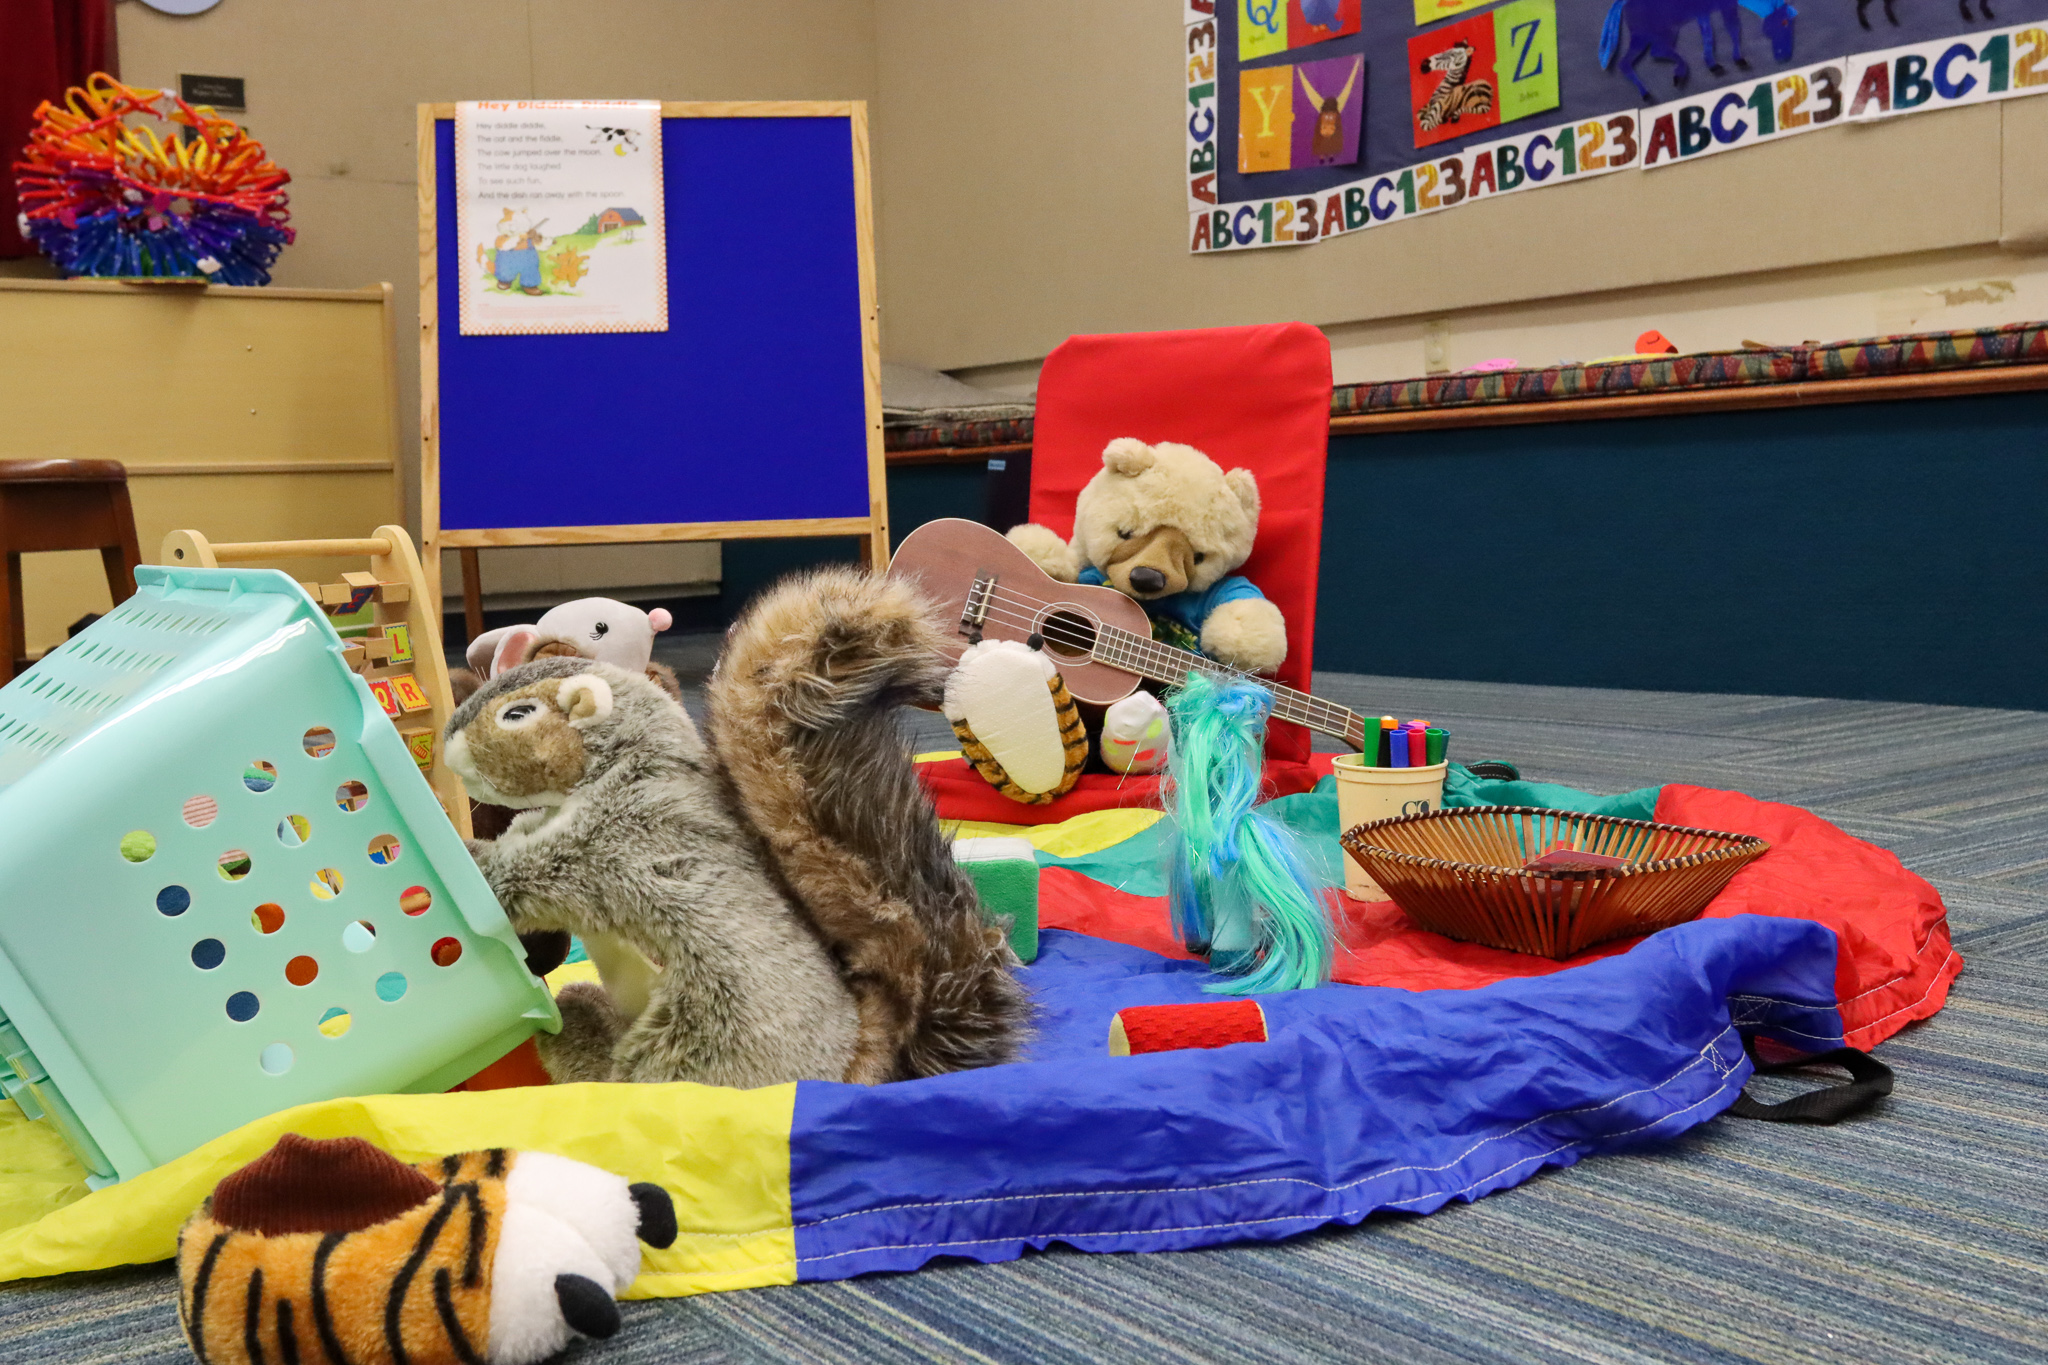 Group of stuffed animals on sleepover at Main Library run amok overnight